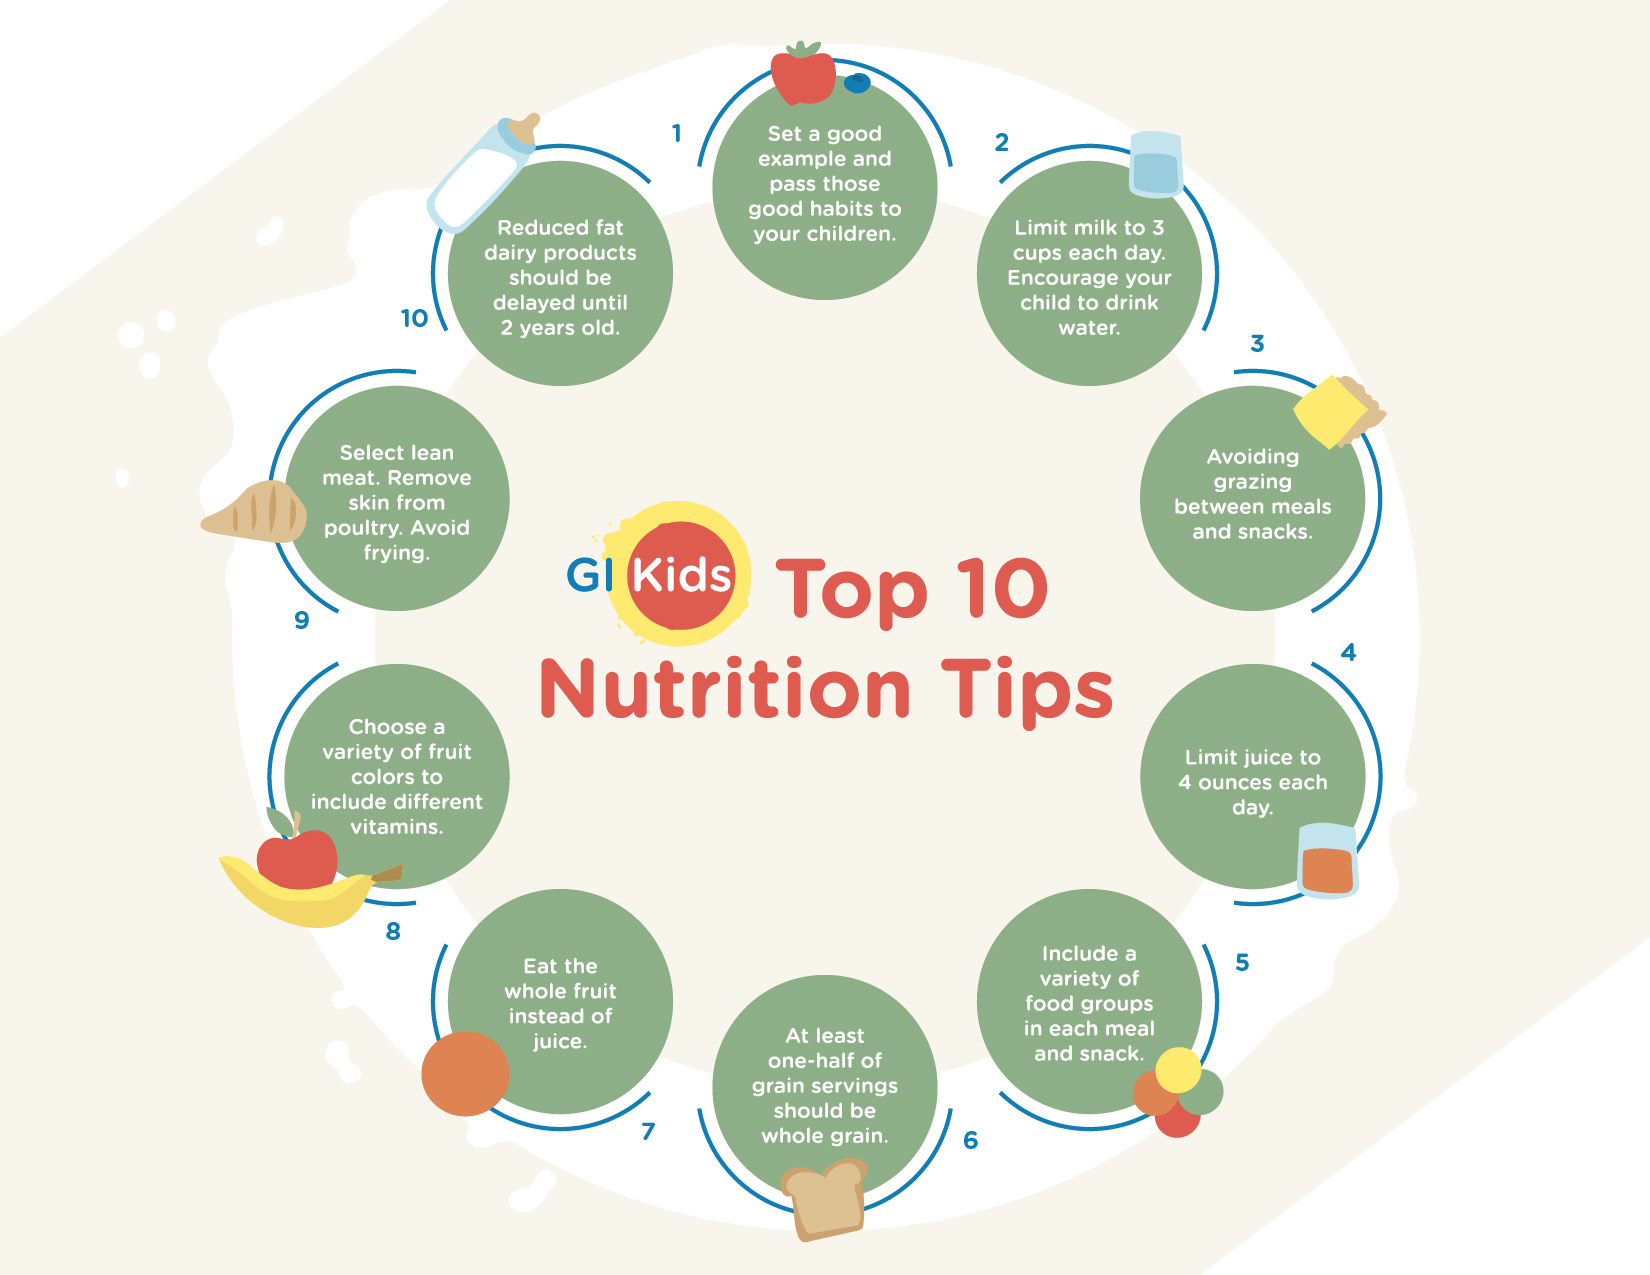 GIKids_Top10_NutritionTips_full_final.jpg